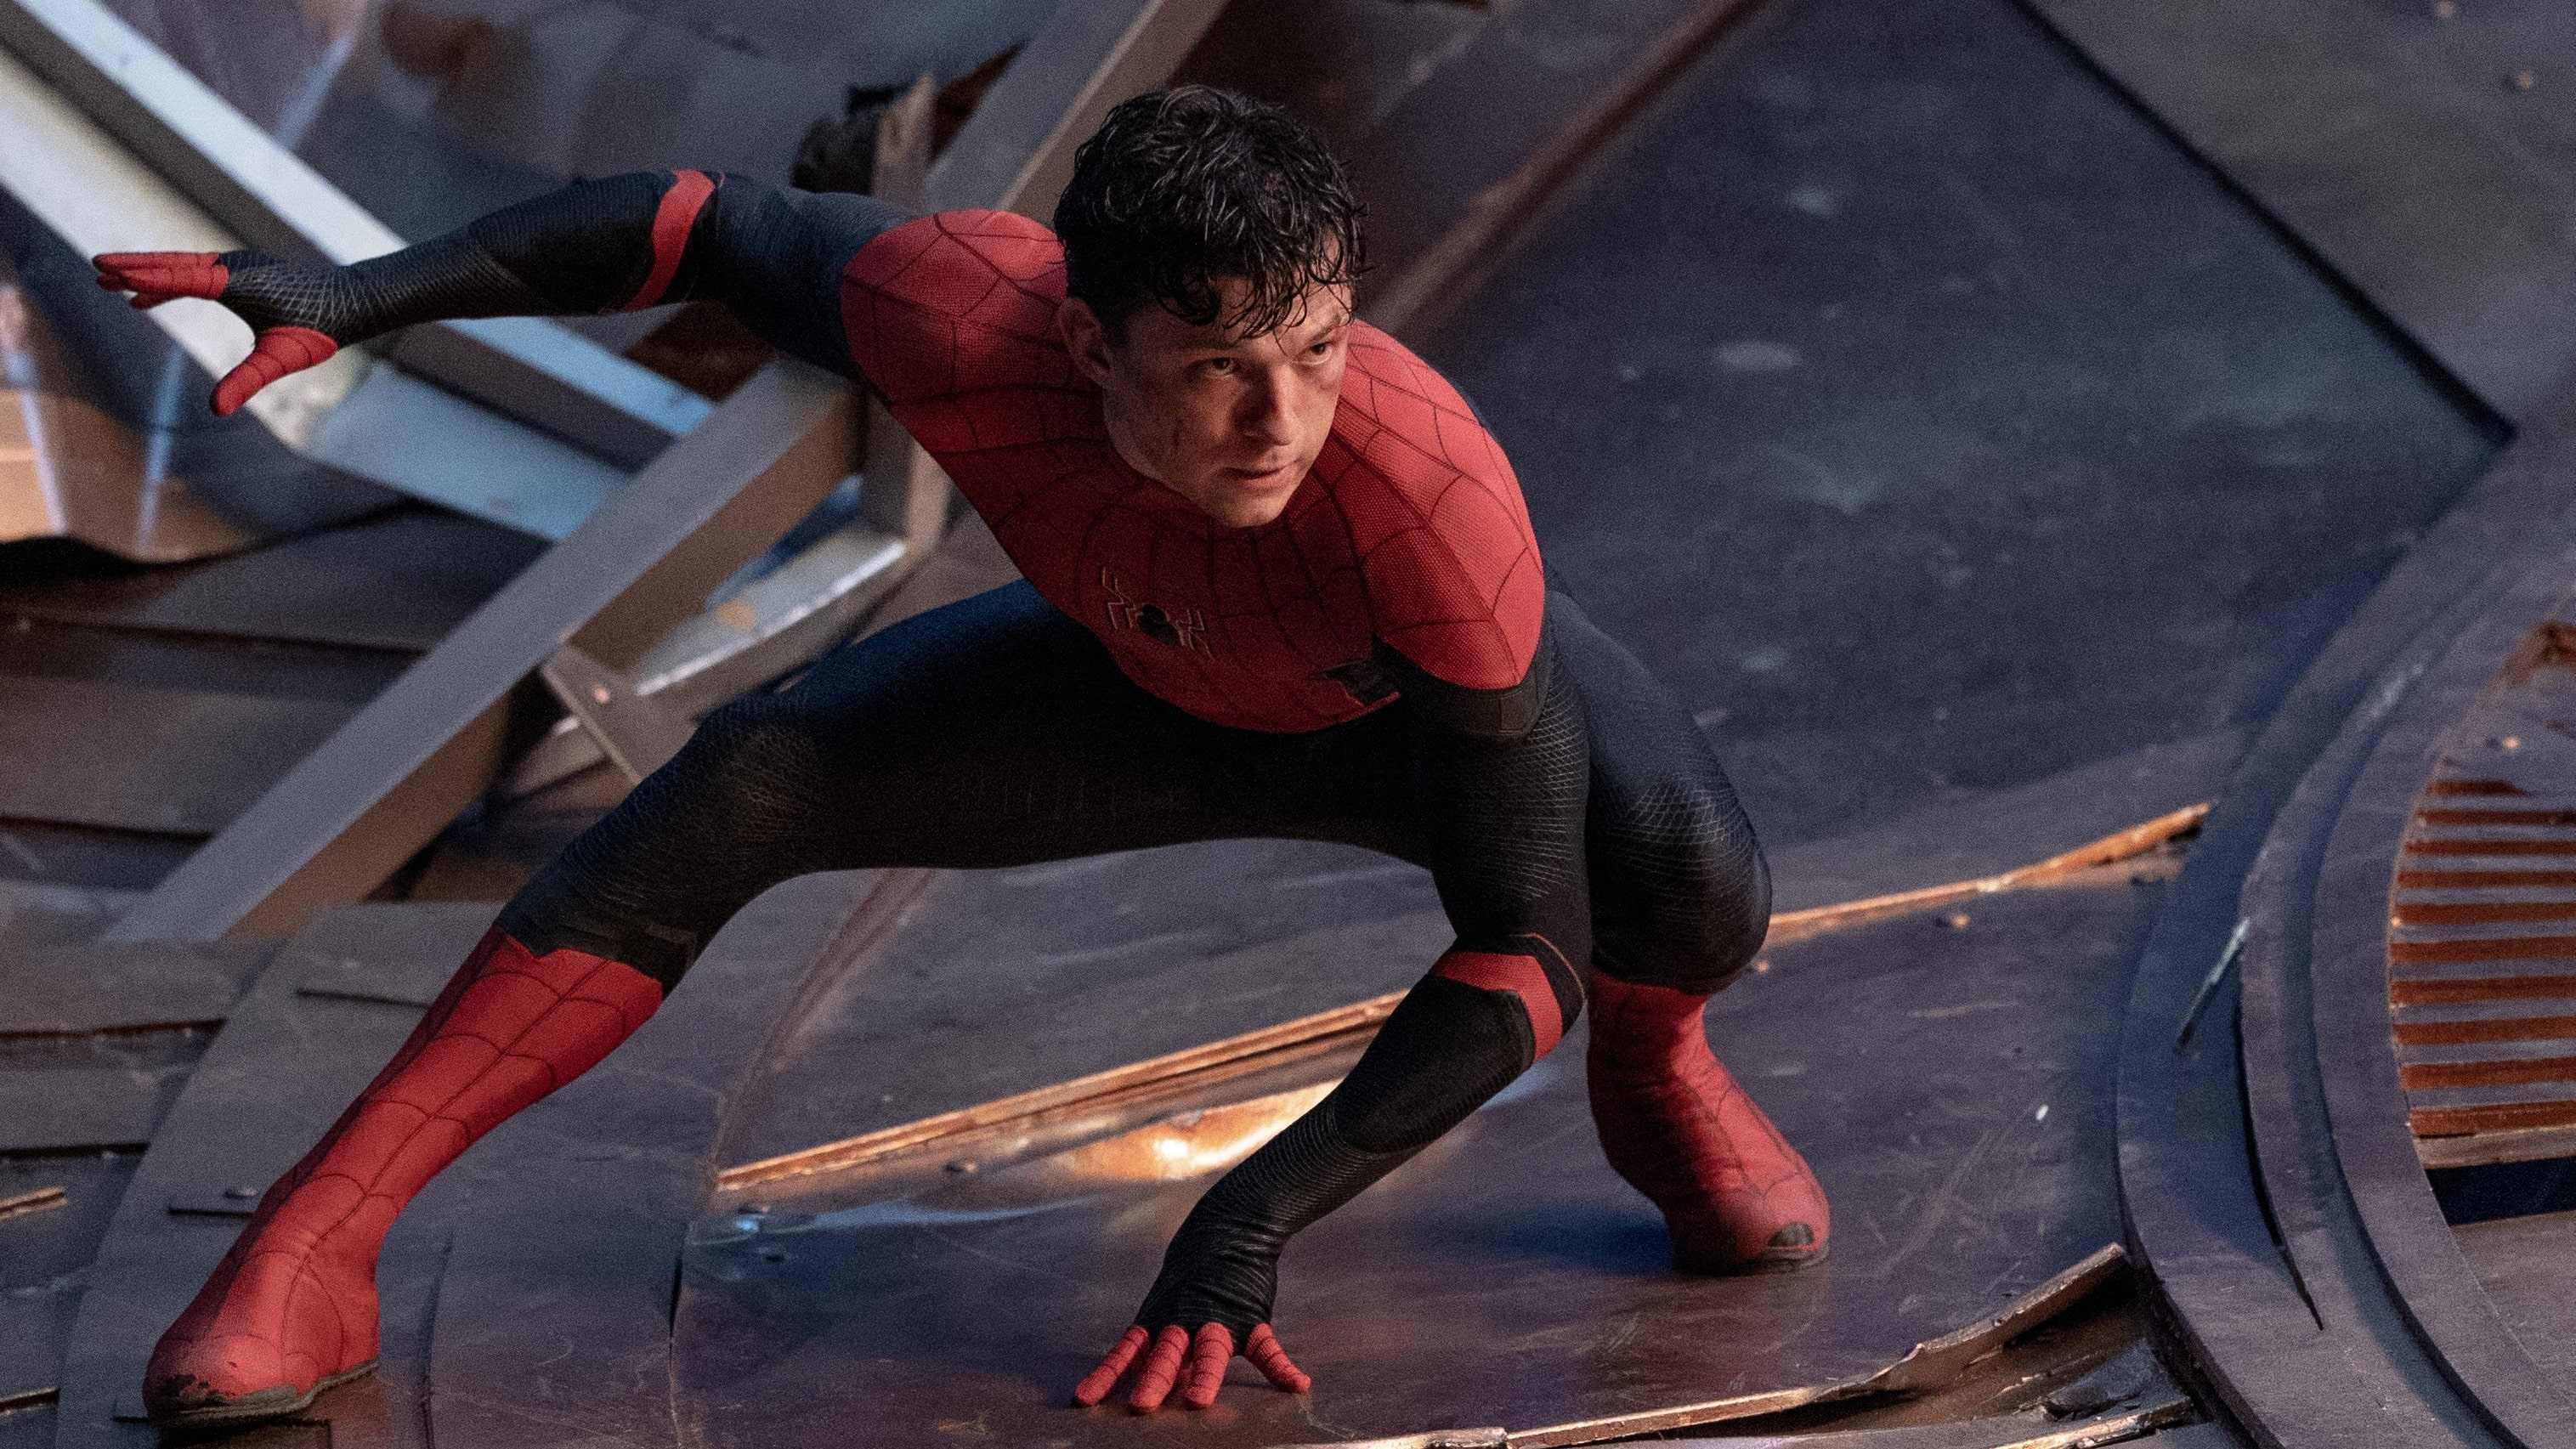 Цифровой релиз фильма Marvel Человек-паук: Нет пути домой будет перенесён с 28 февраля на 22 марта 2022 года Об этом сообщил пользователь Reddit с ником